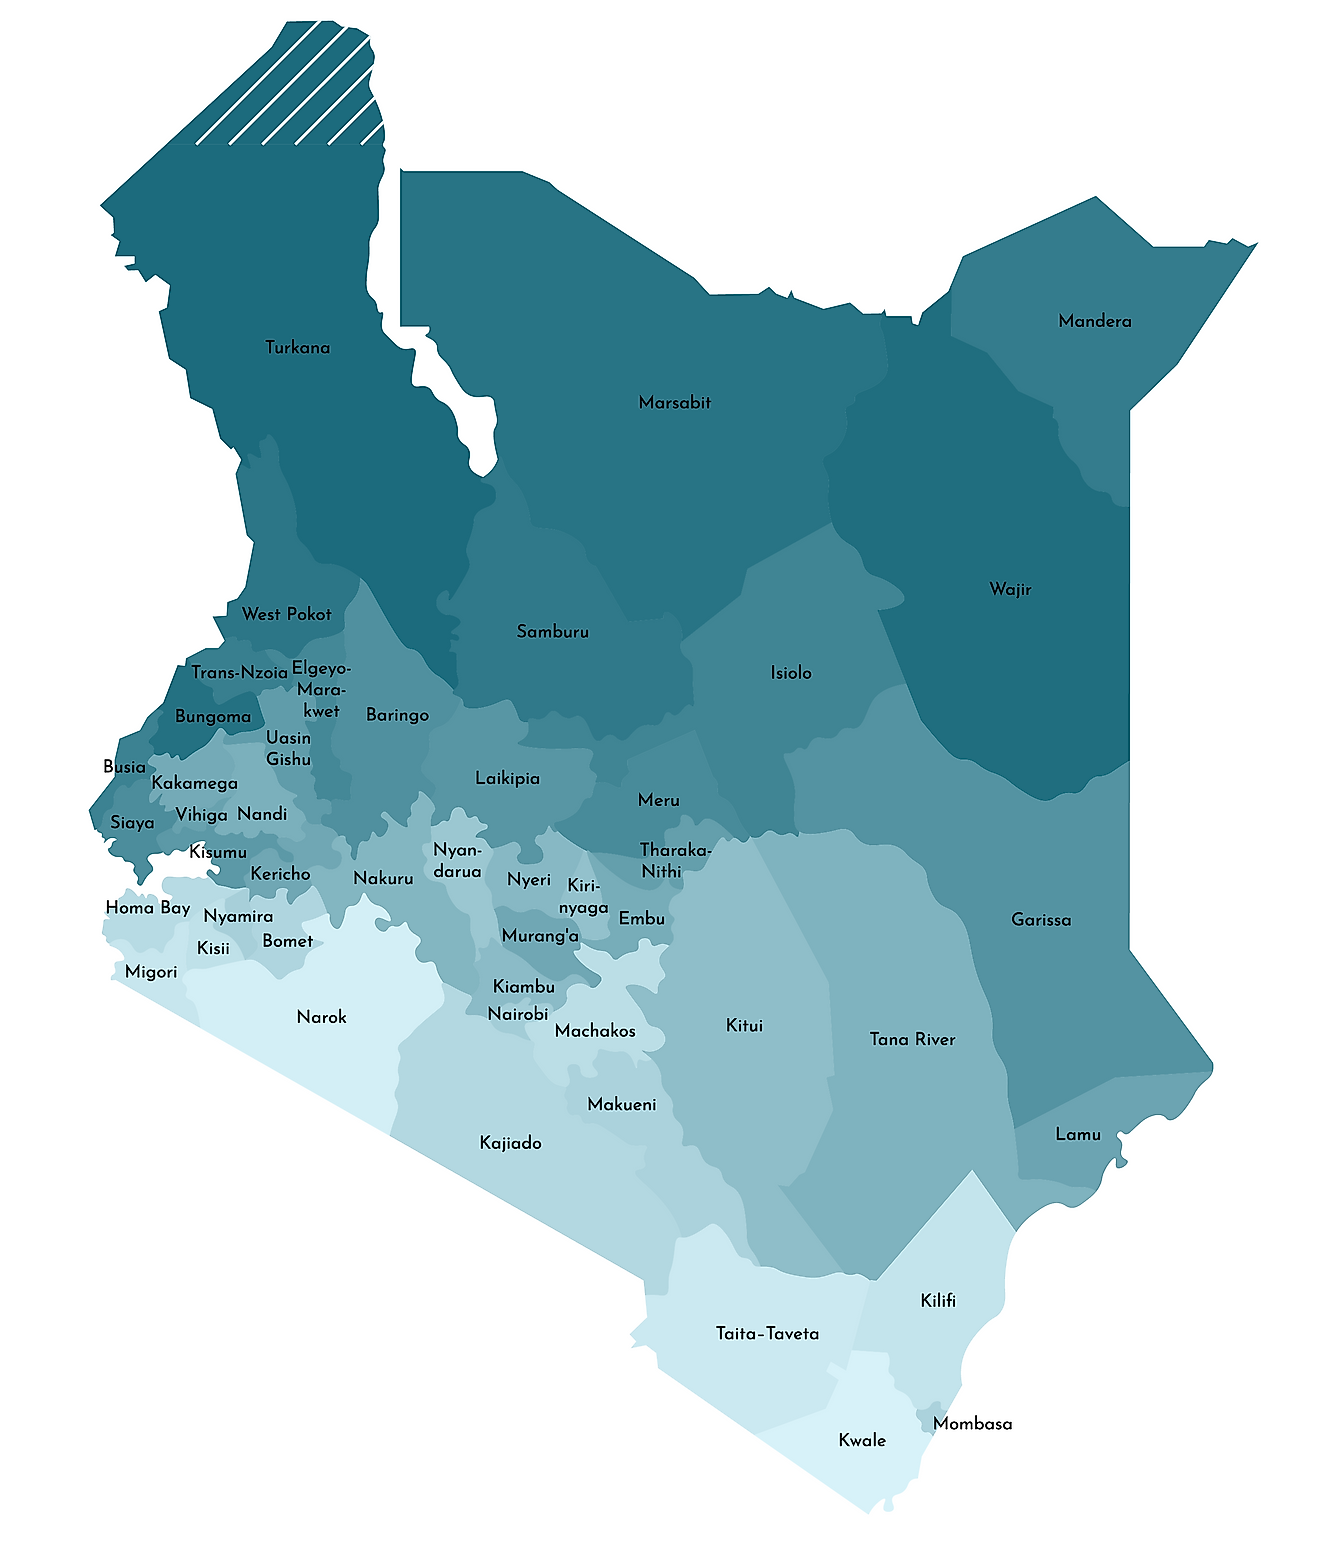 Mapa político de Kenia que muestra 47 condados, incluida la capital nacional de Nairobi.